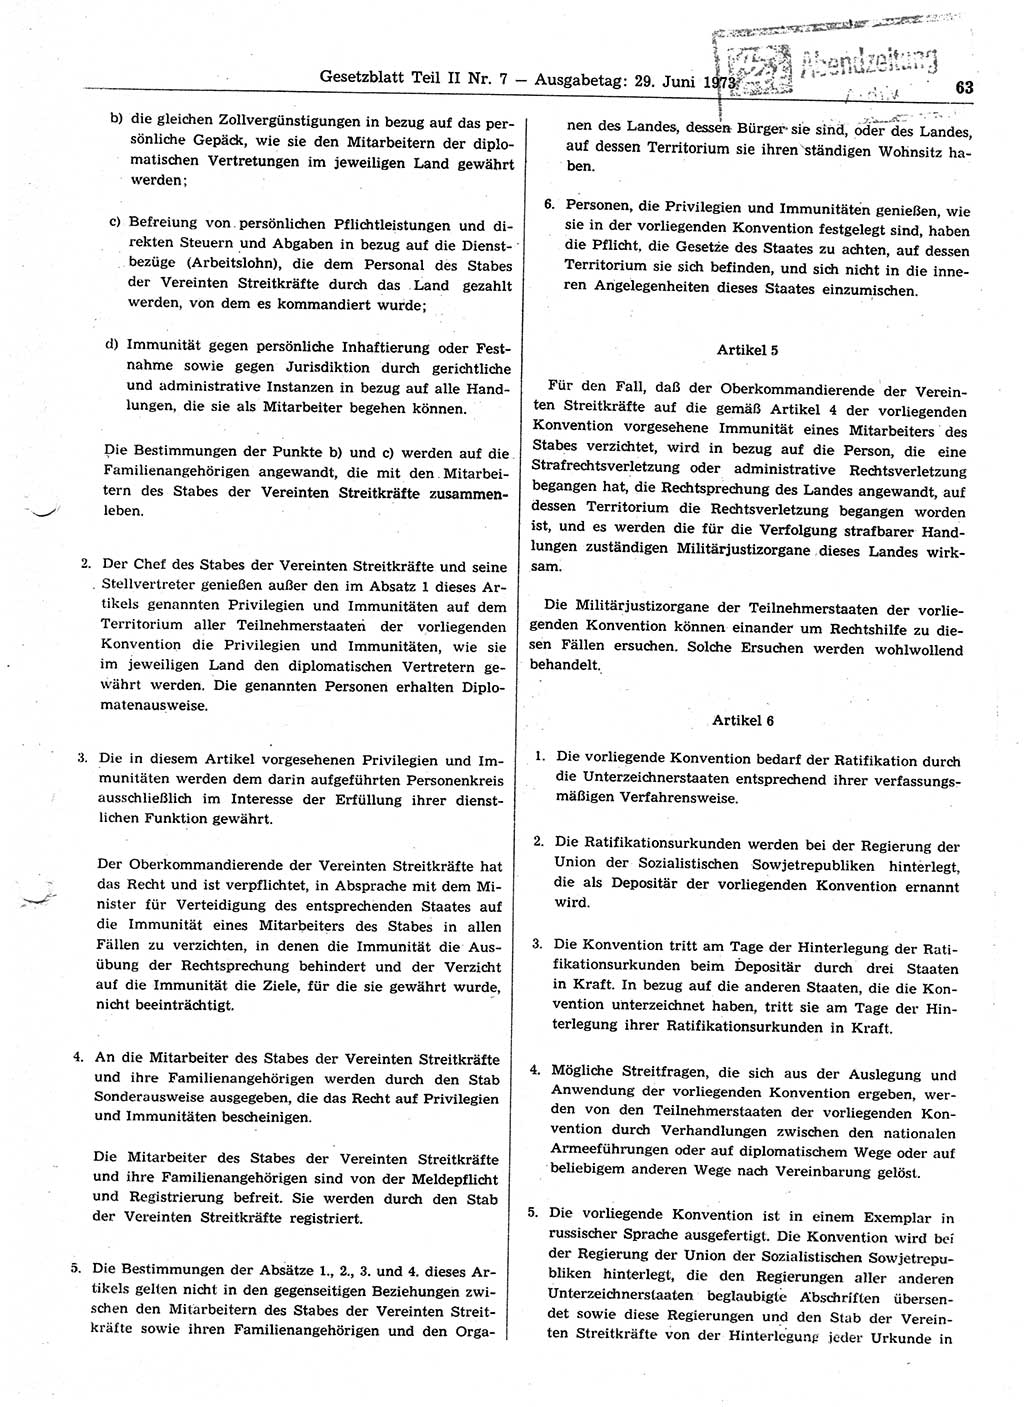 Gesetzblatt (GBl.) der Deutschen Demokratischen Republik (DDR) Teil ⅠⅠ 1973, Seite 63 (GBl. DDR ⅠⅠ 1973, S. 63)